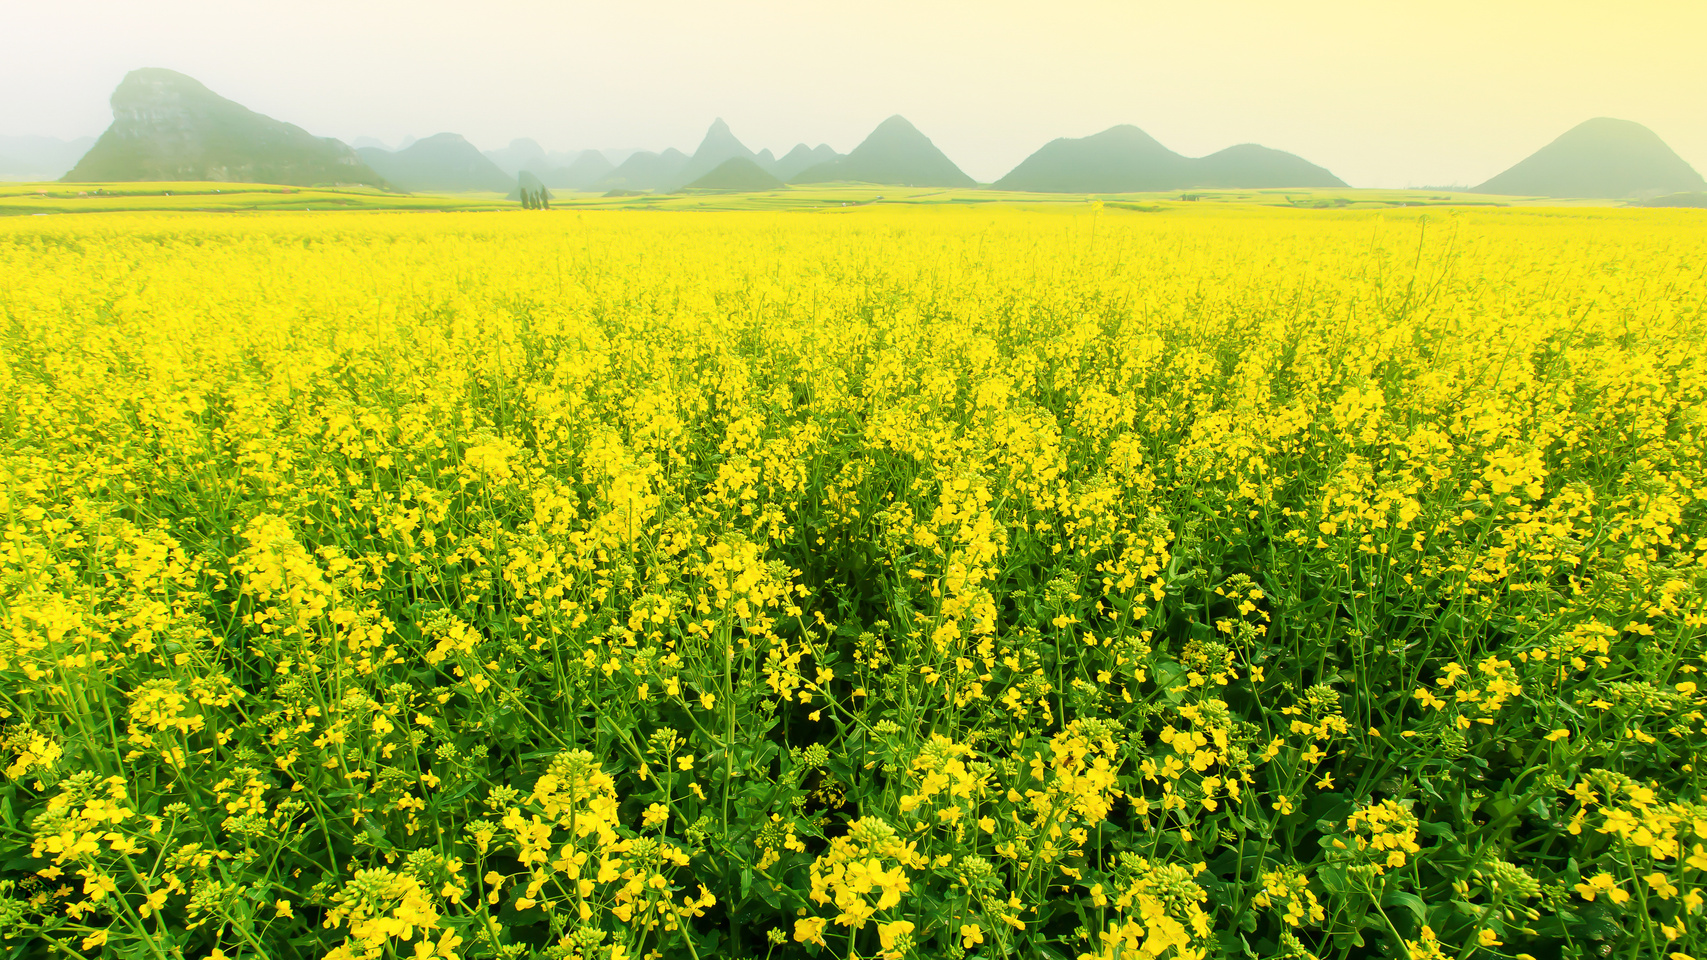 Scenery Yellow Mustard Flowers Fields in Full Bloom.